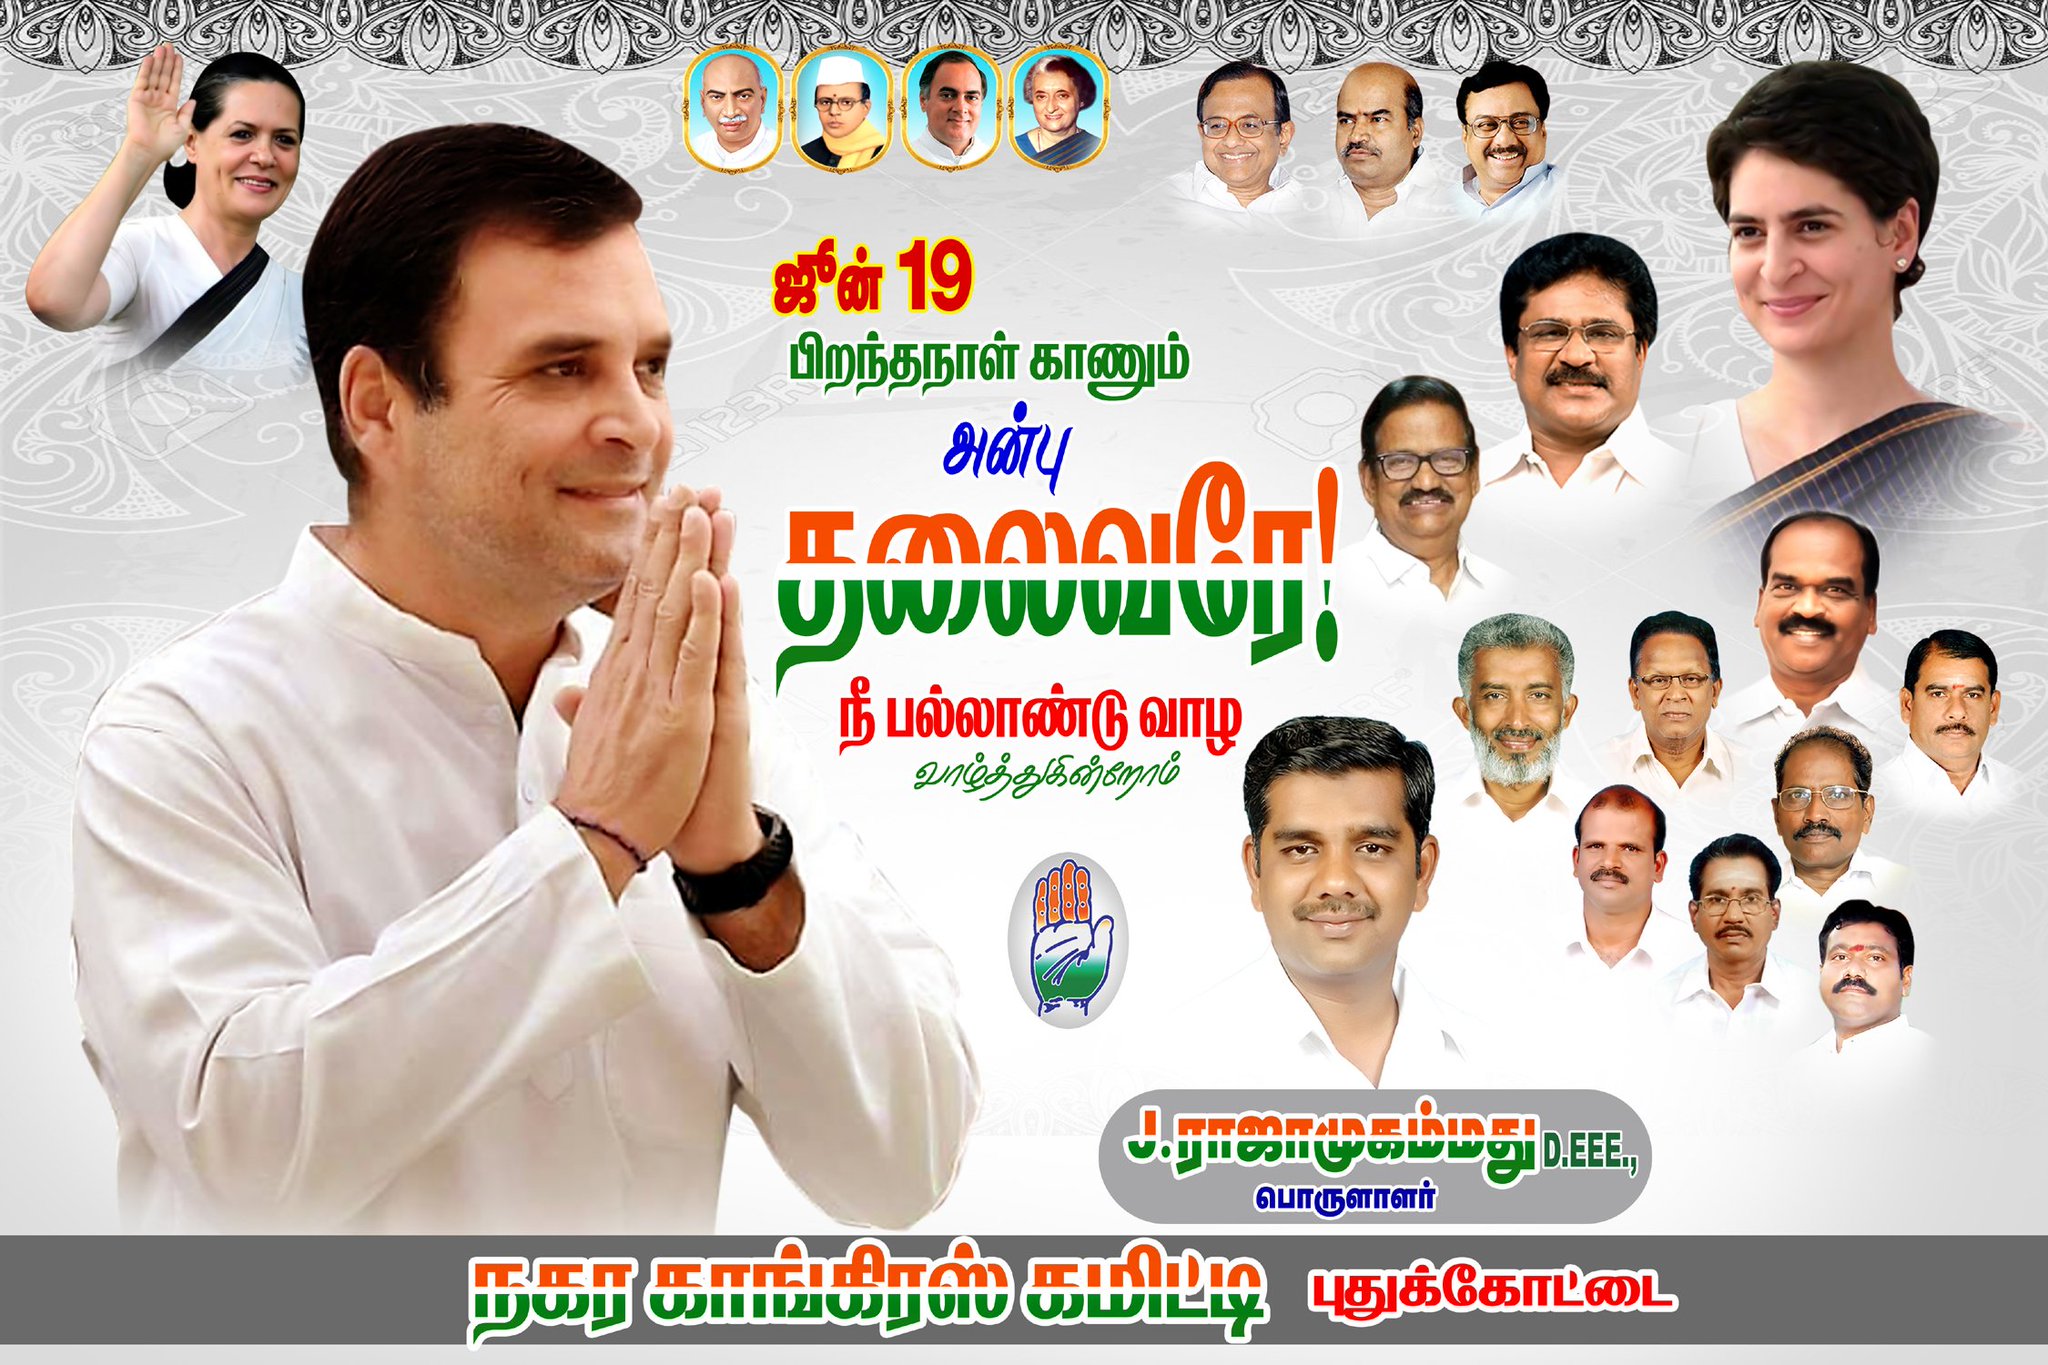 Happy birthday to  Honerble Mr. Rahul Gandhi ji 